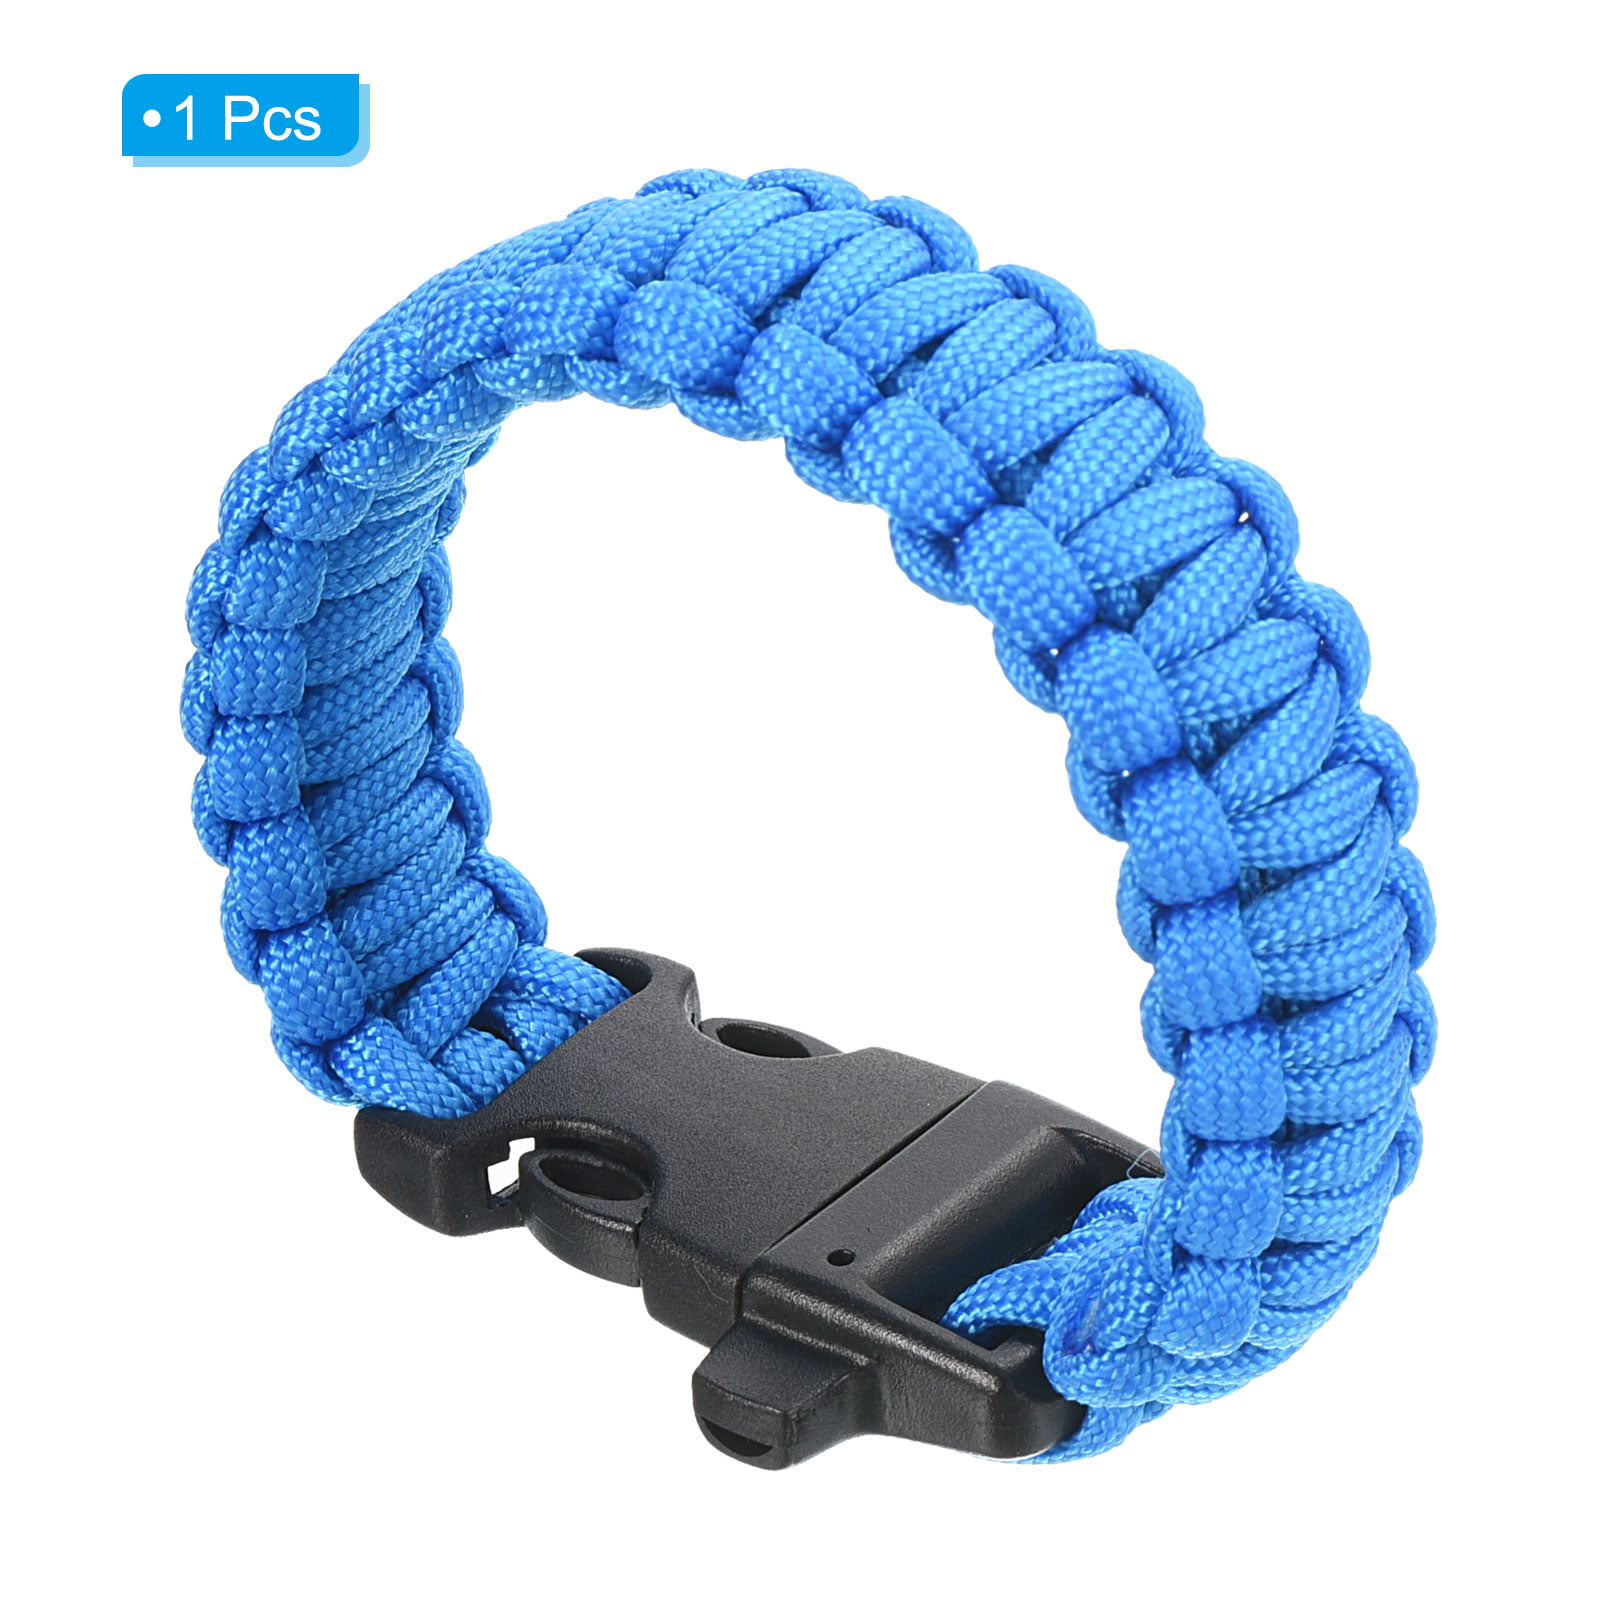 Uxcell Survival Paracord Bracelets, Braided Parachute Bracelet, Blue